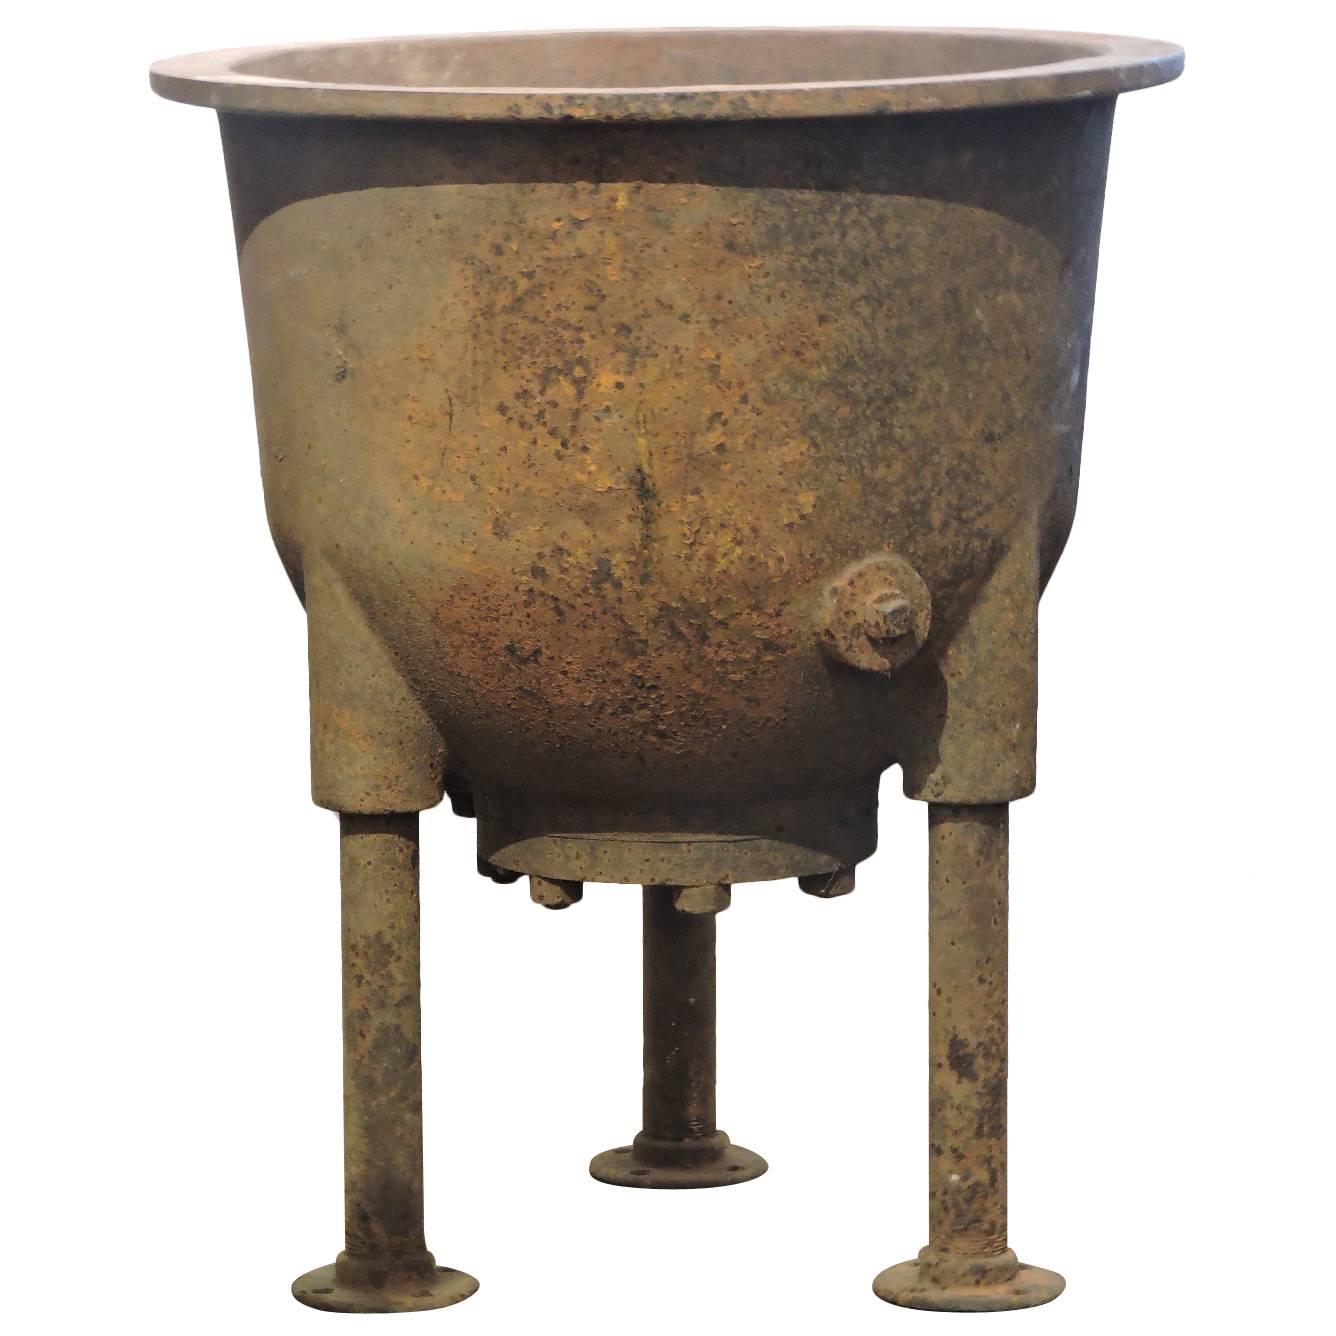  Antique Industrial Cauldron